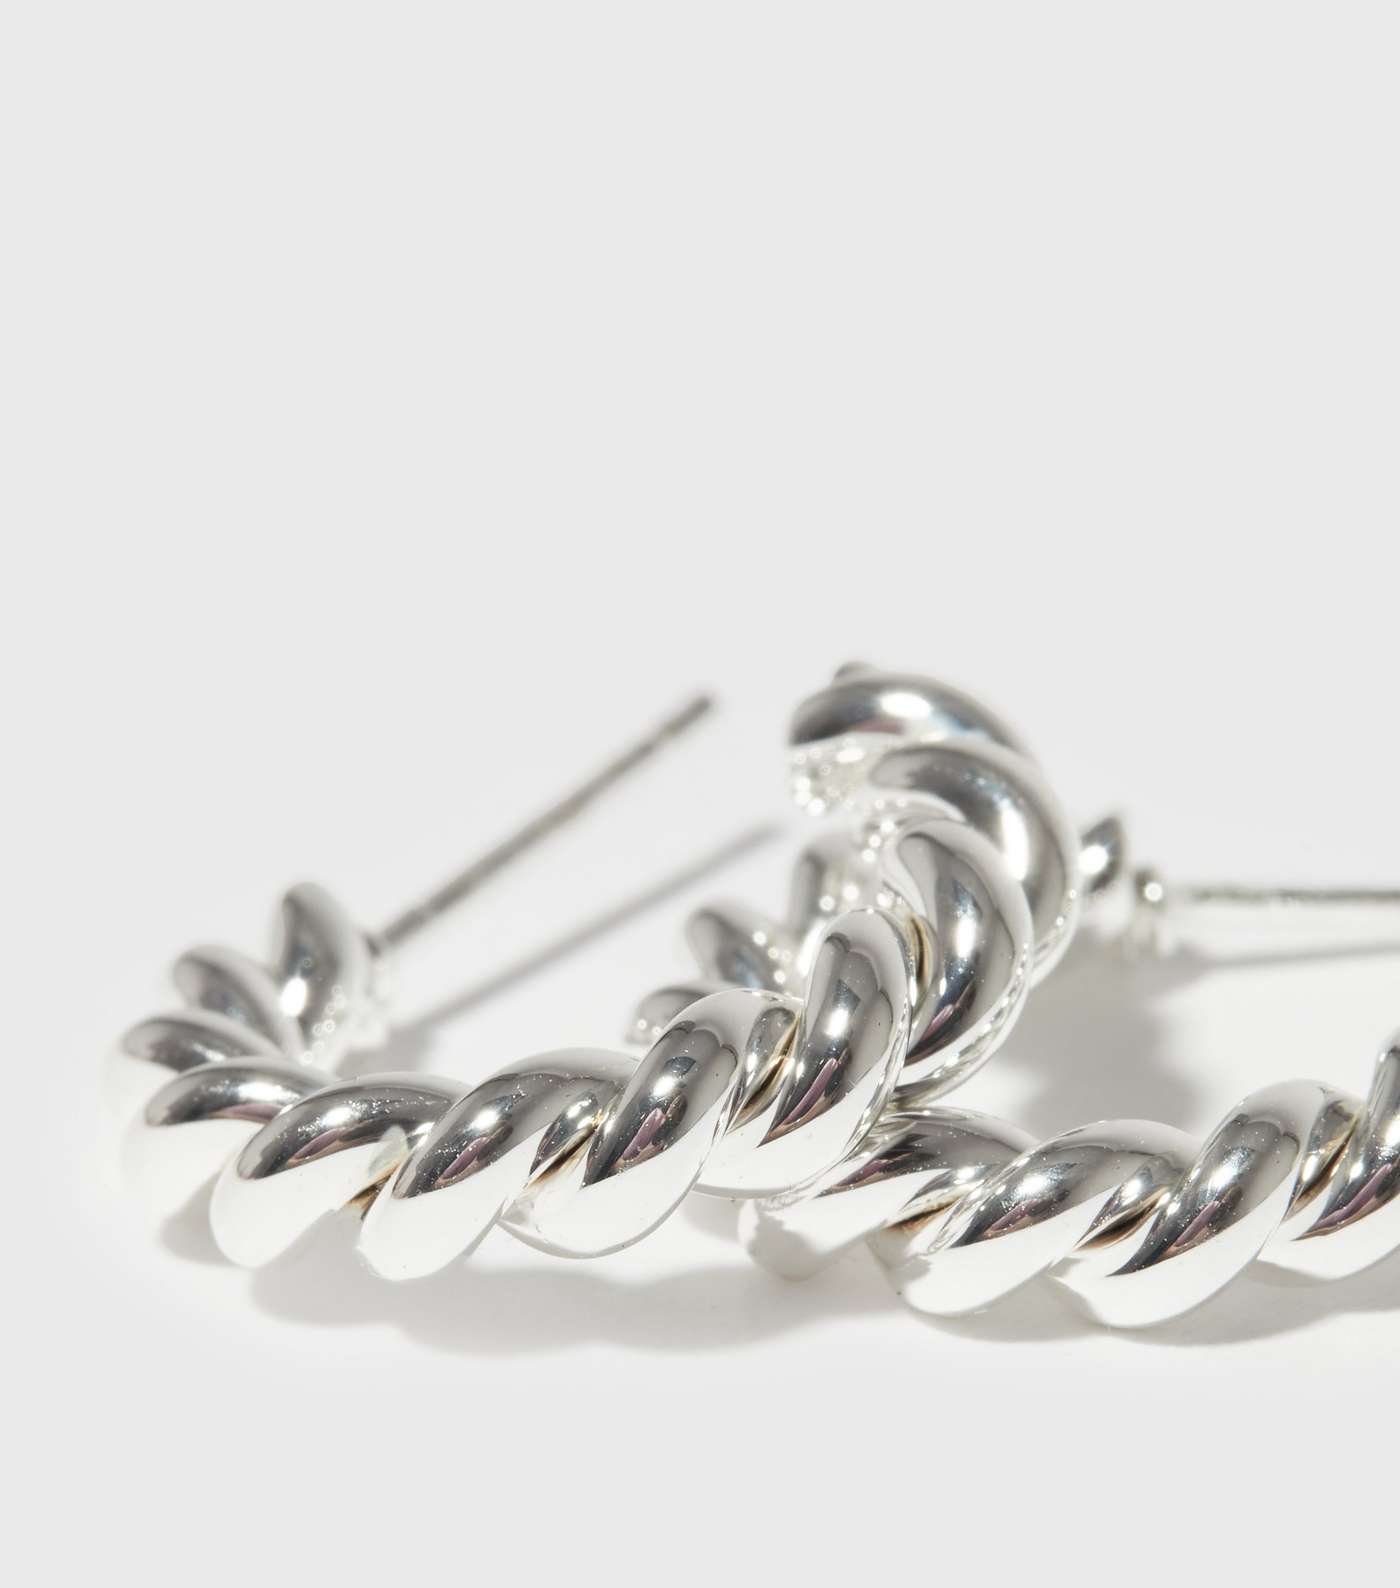 Real Silver Plated Twist Hoop Earrings Image 2